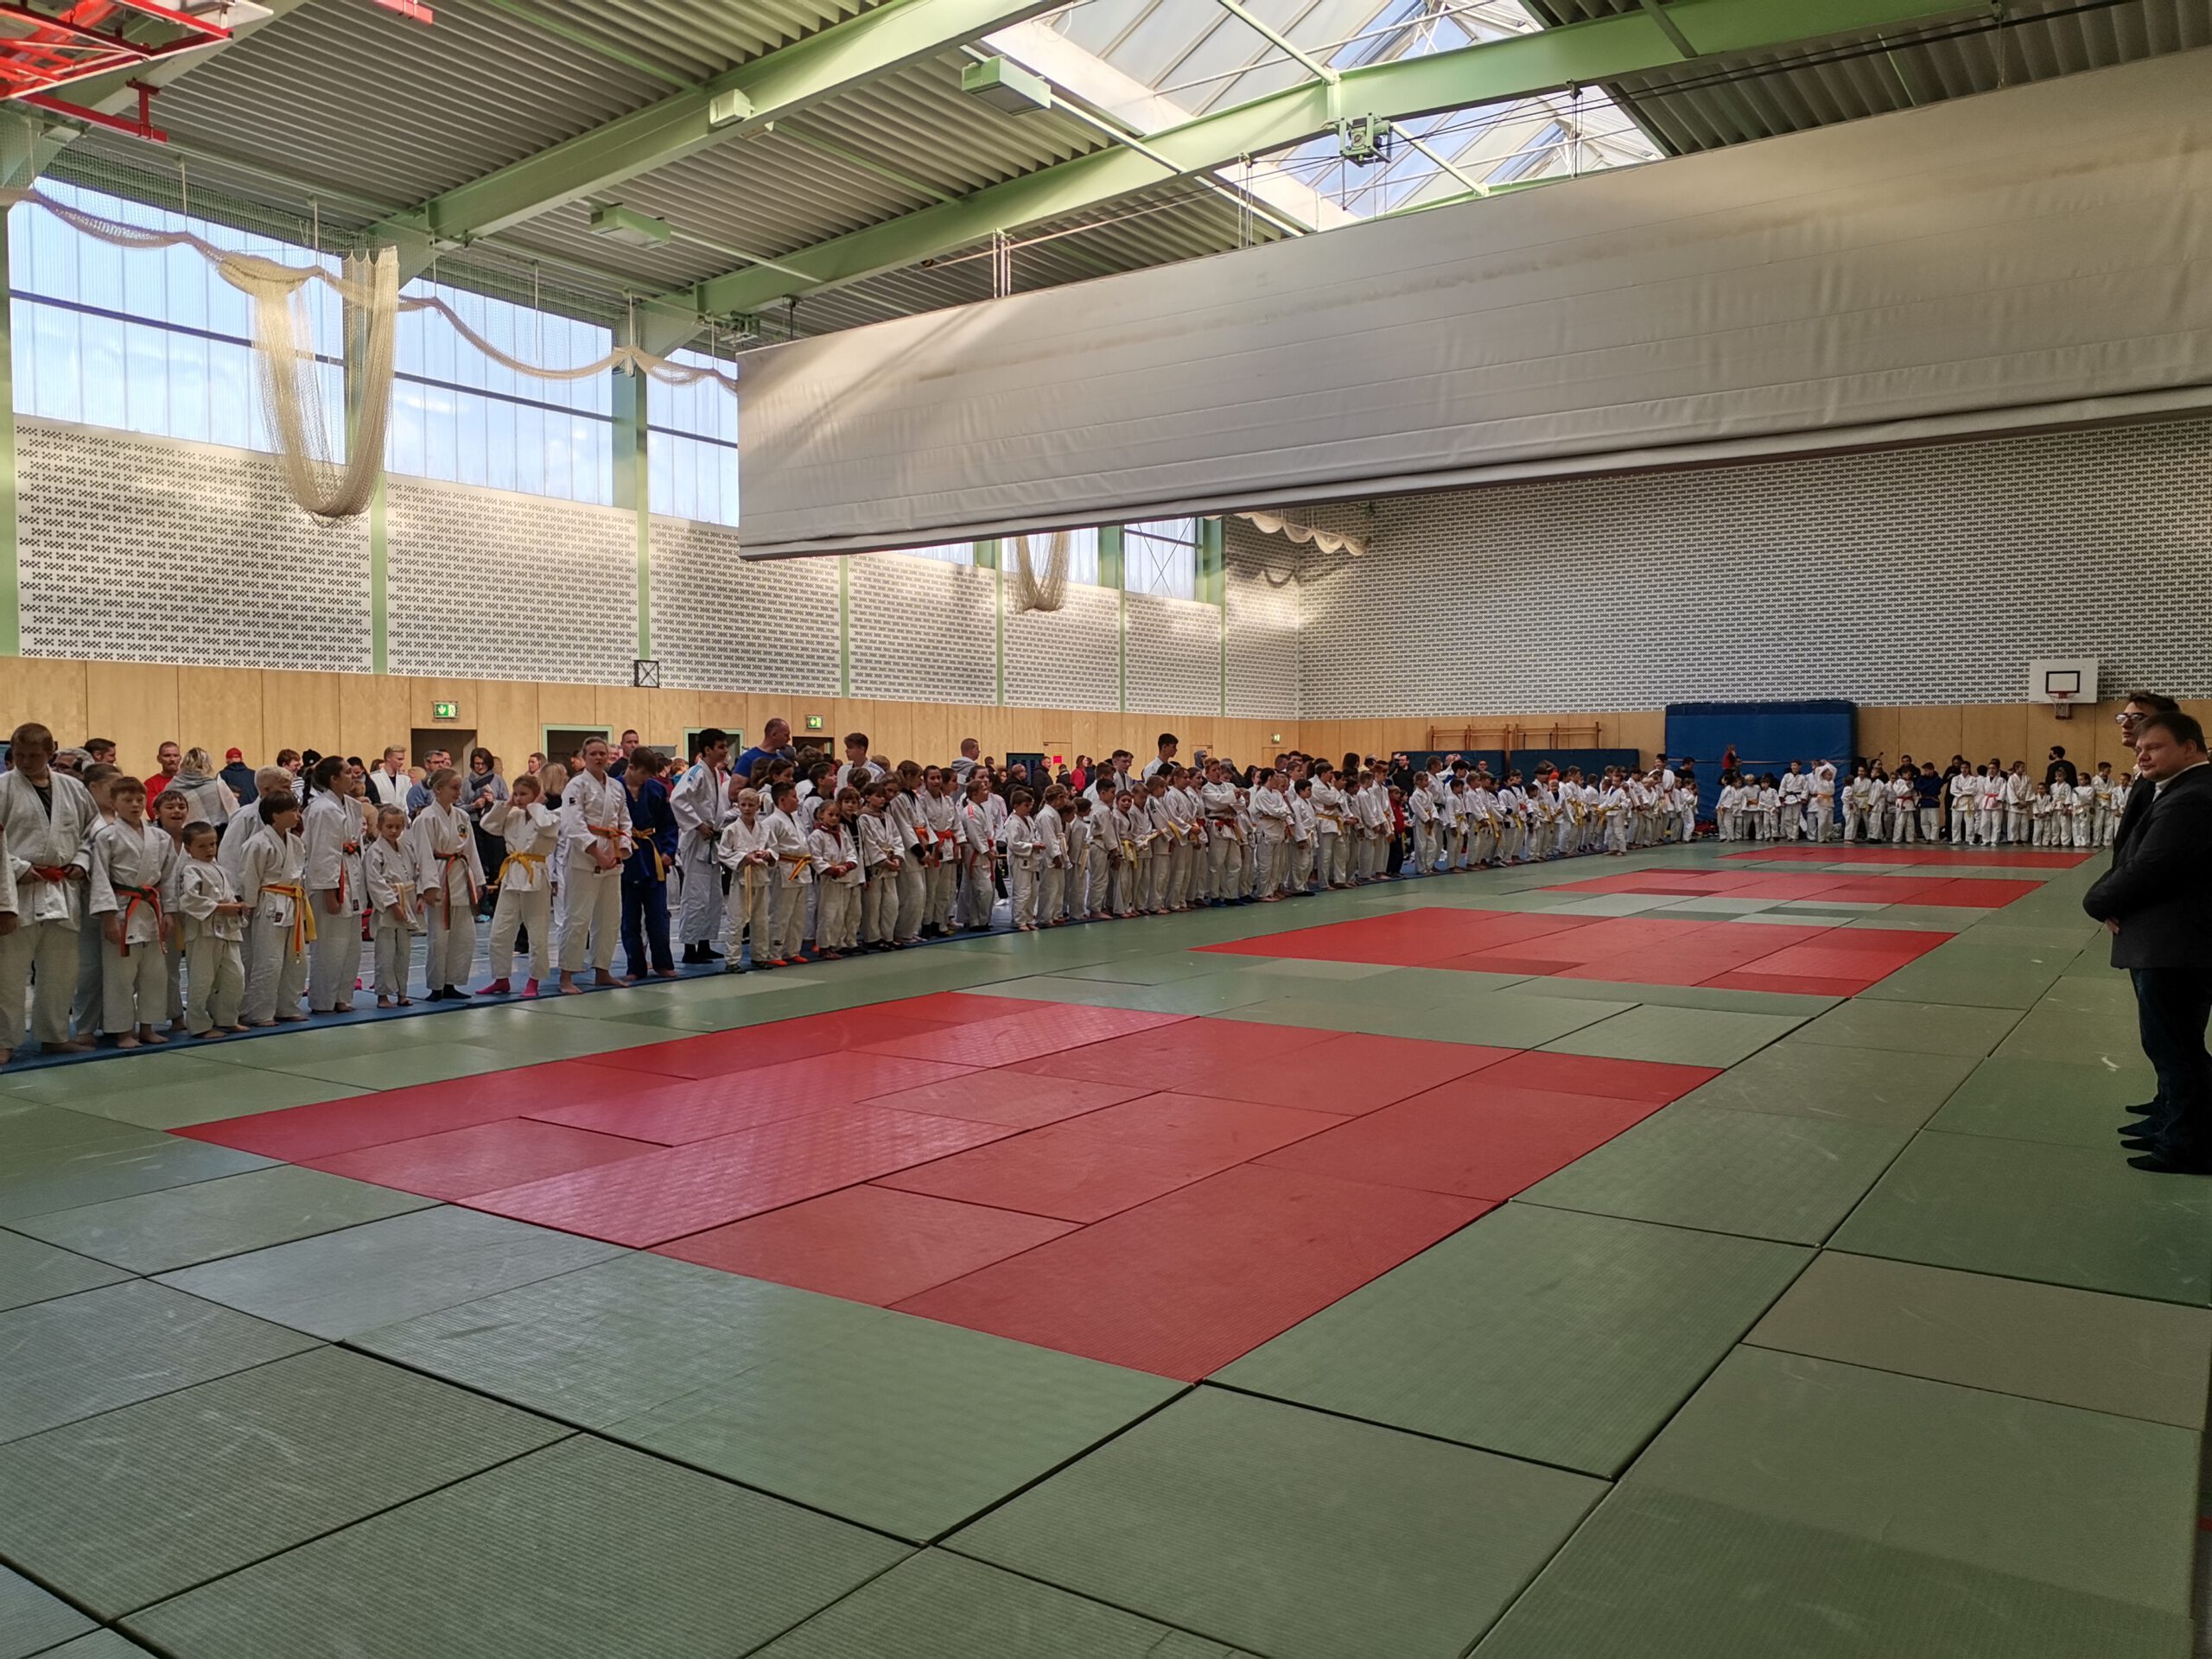 Rathenower Judoka auf mehreren Matten unterwegs